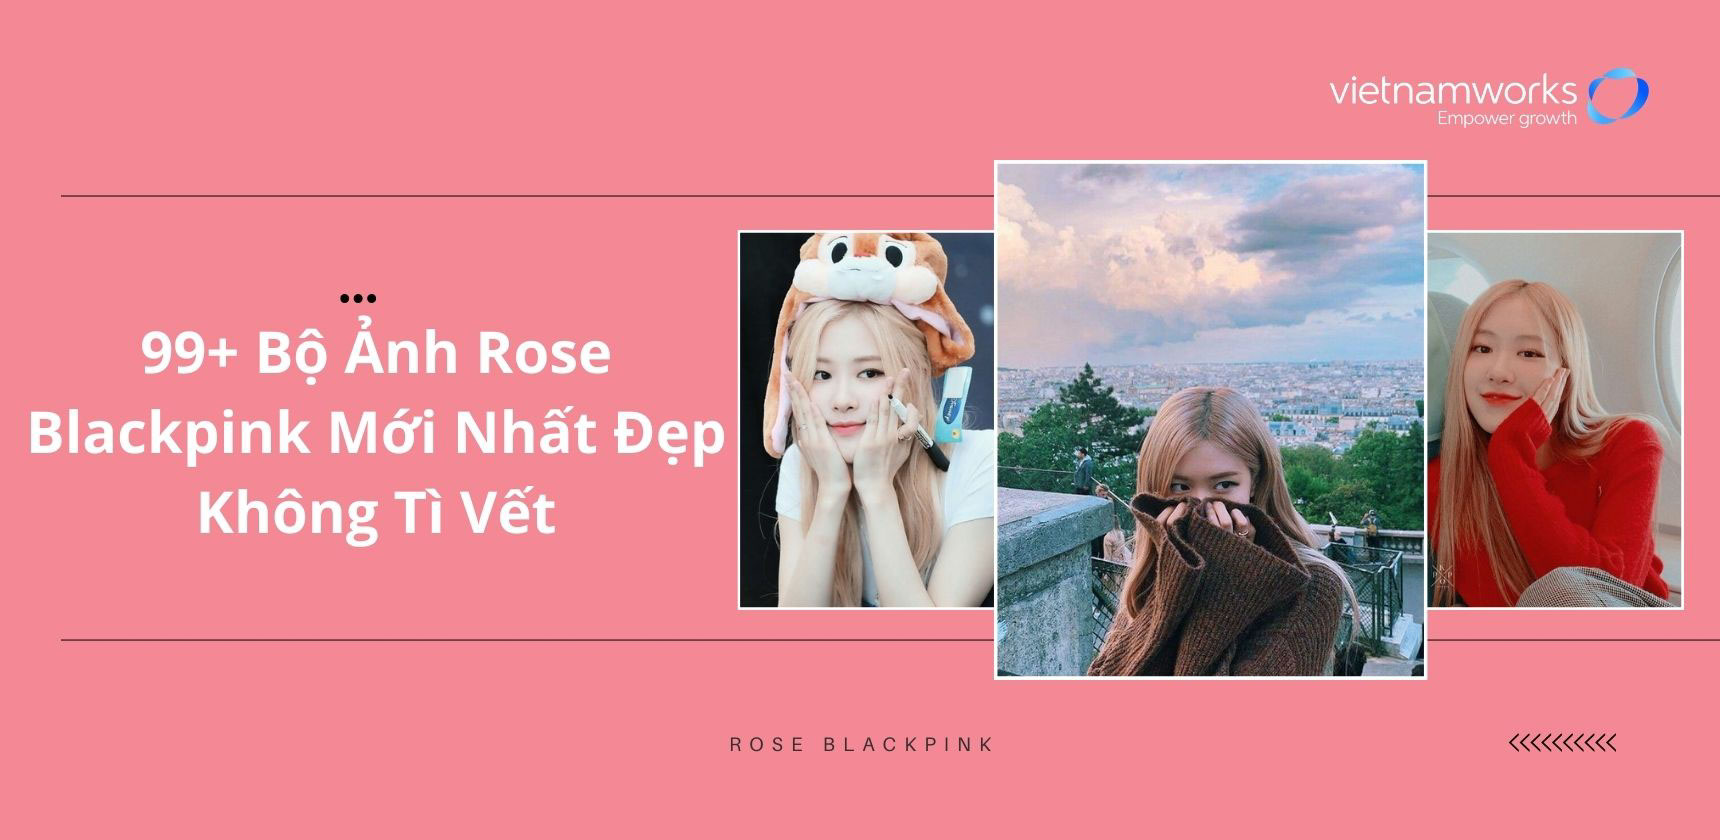 99+ Bộ Ảnh Rose Blackpink Mới Nhất Đẹp Không Tì Vết